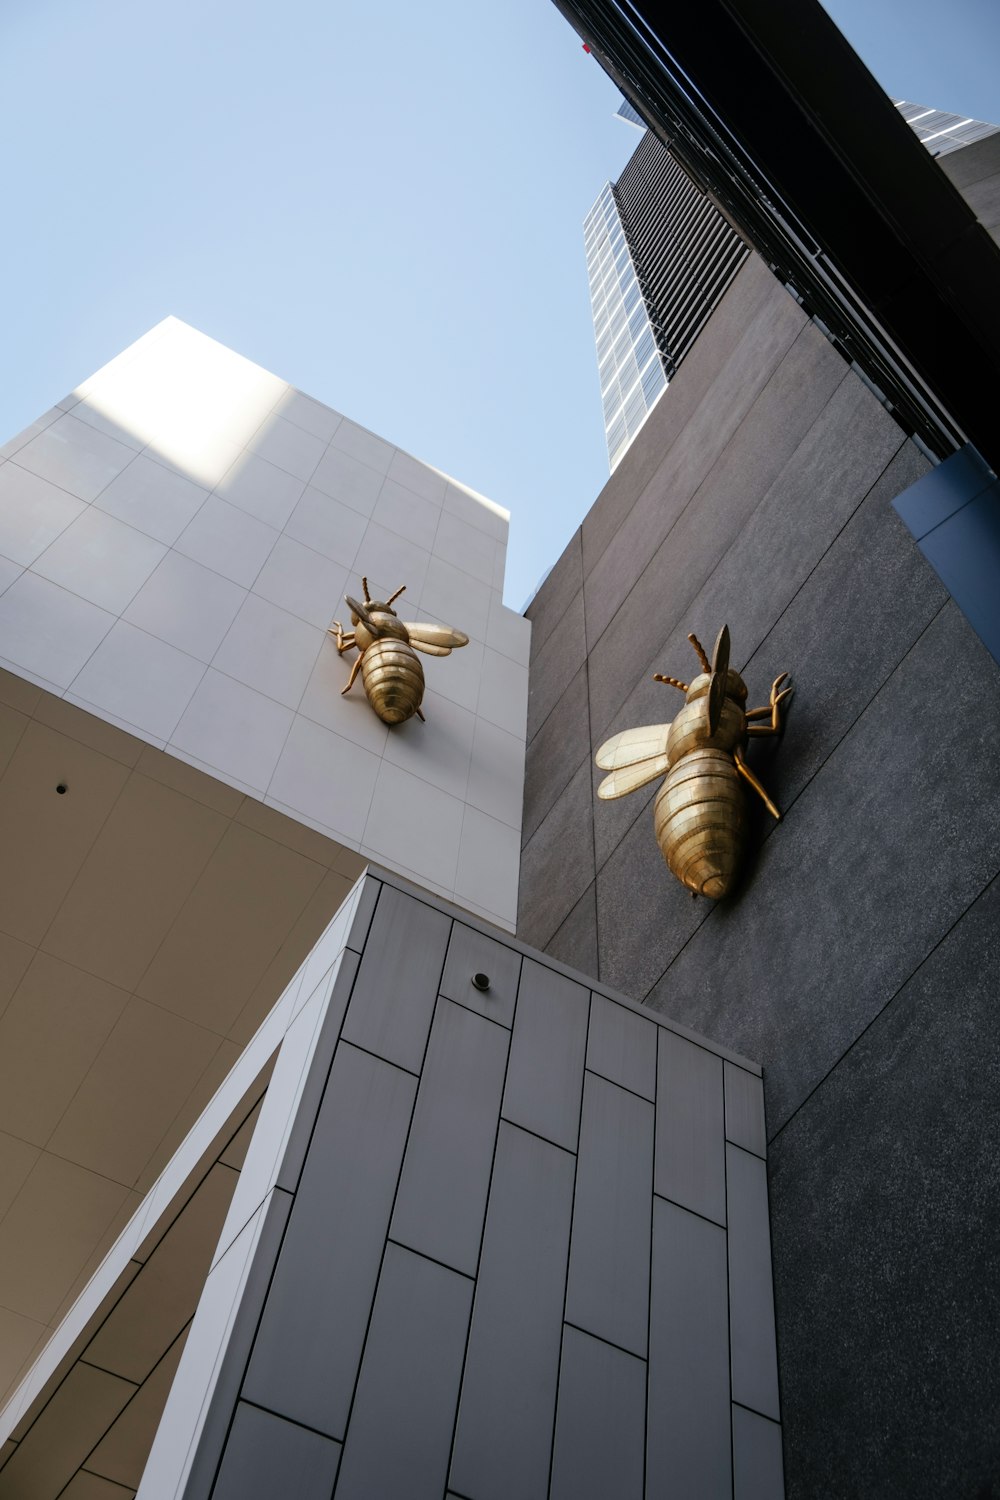 회색 콘크리트 건물에 회색 꿀벌 조각상